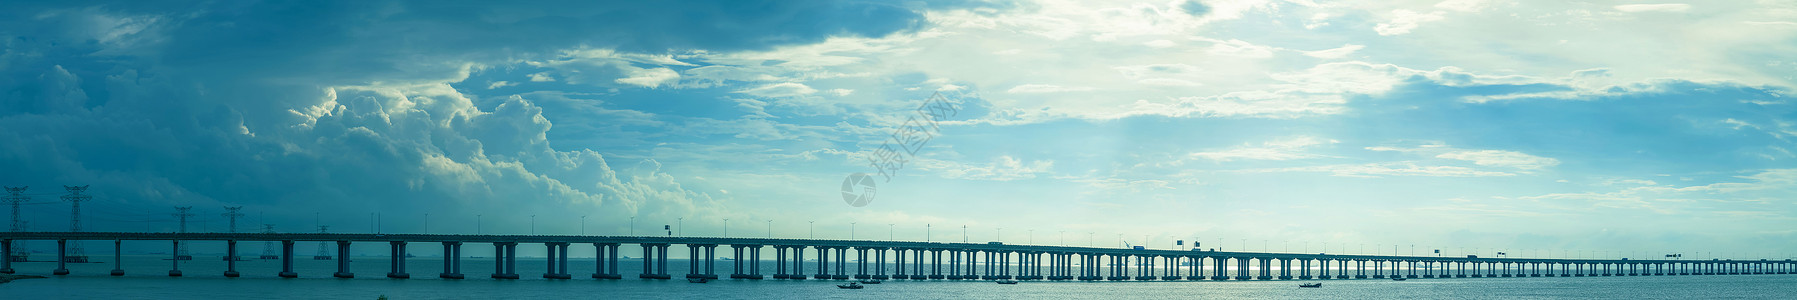 海面上的阳光高速公路跨海大桥背景